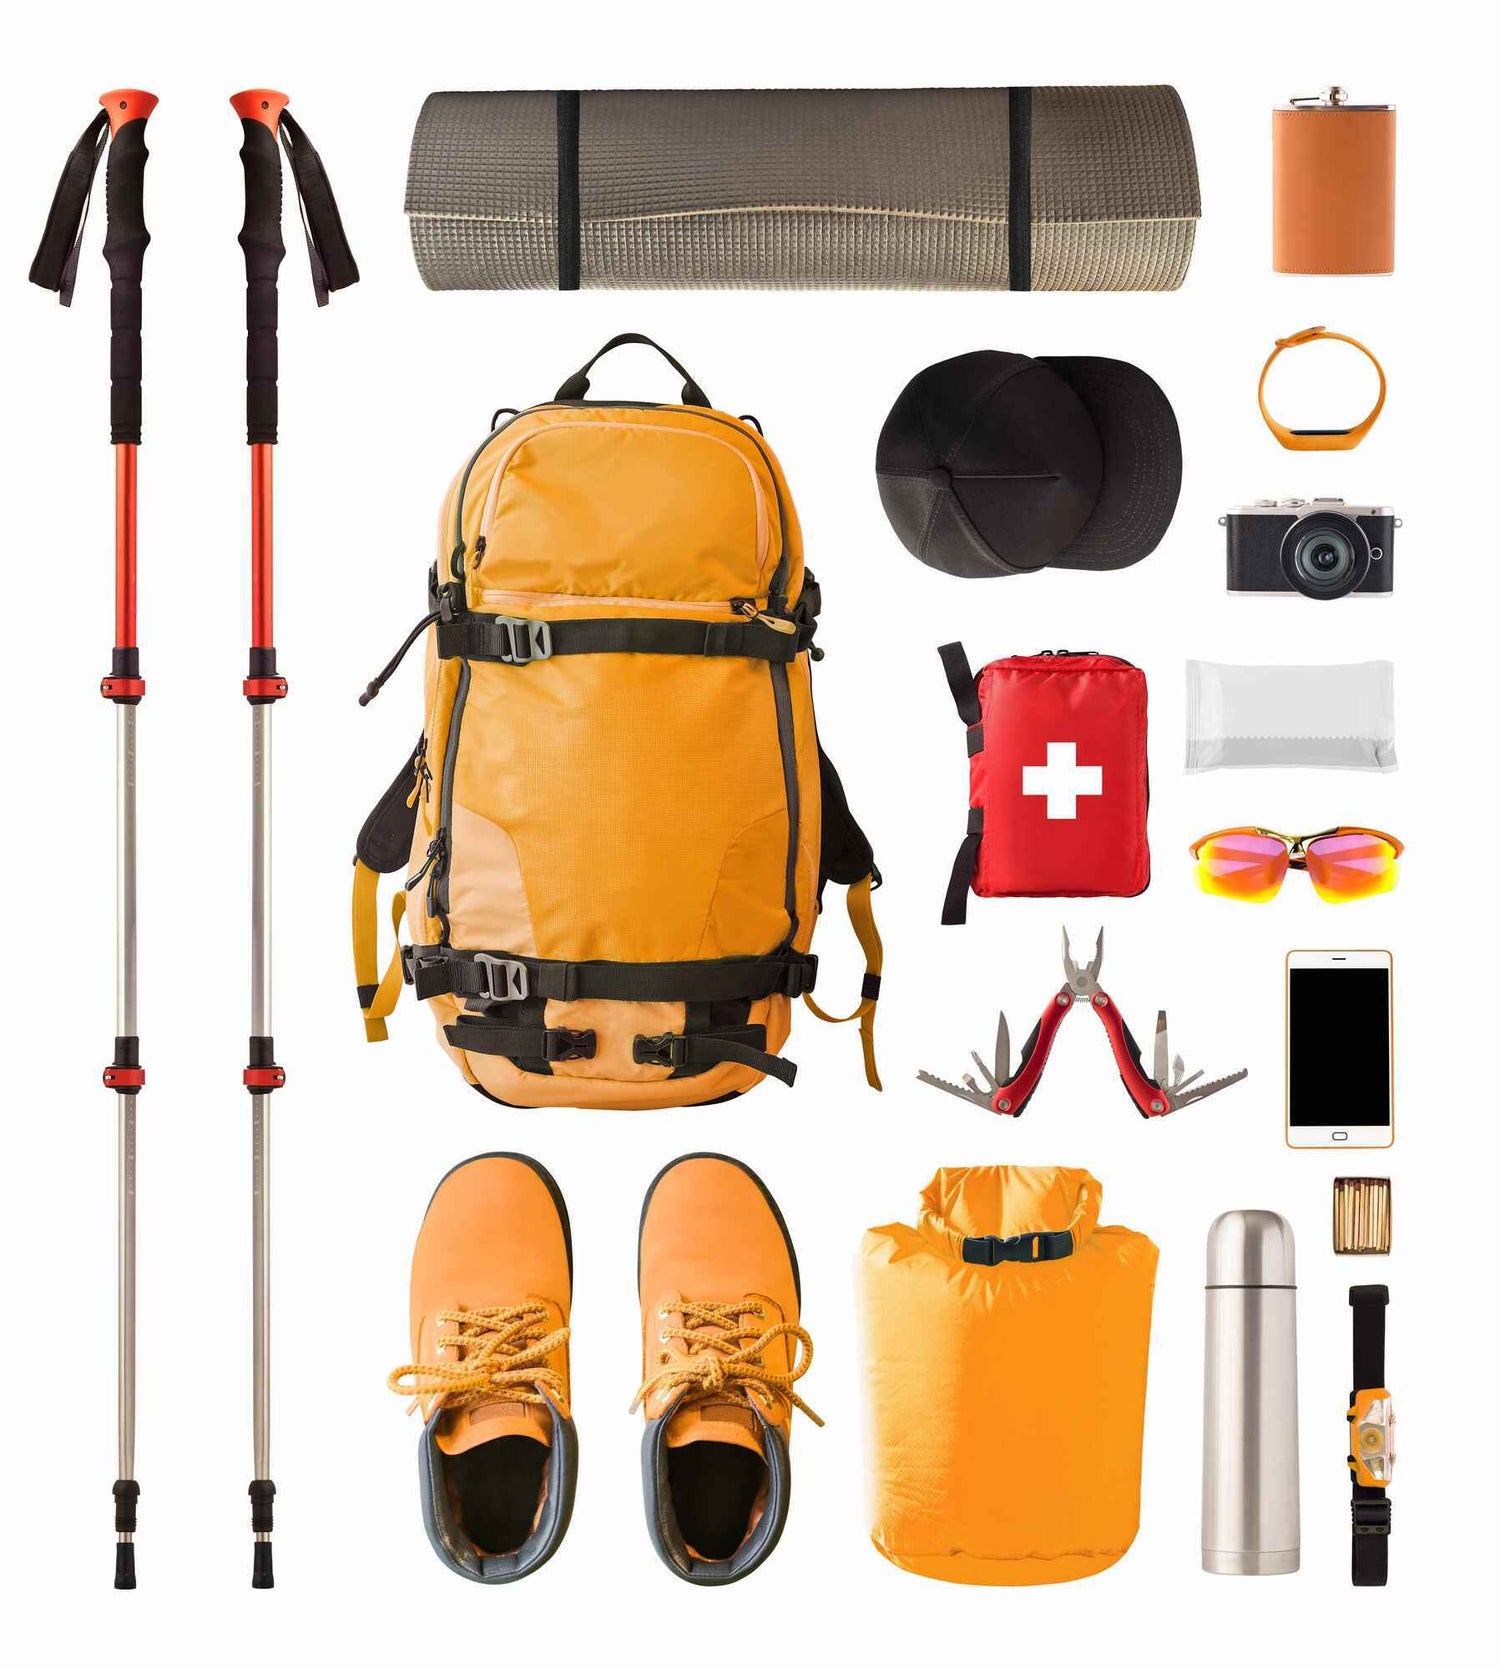 Backpacks & Hiking Equipment